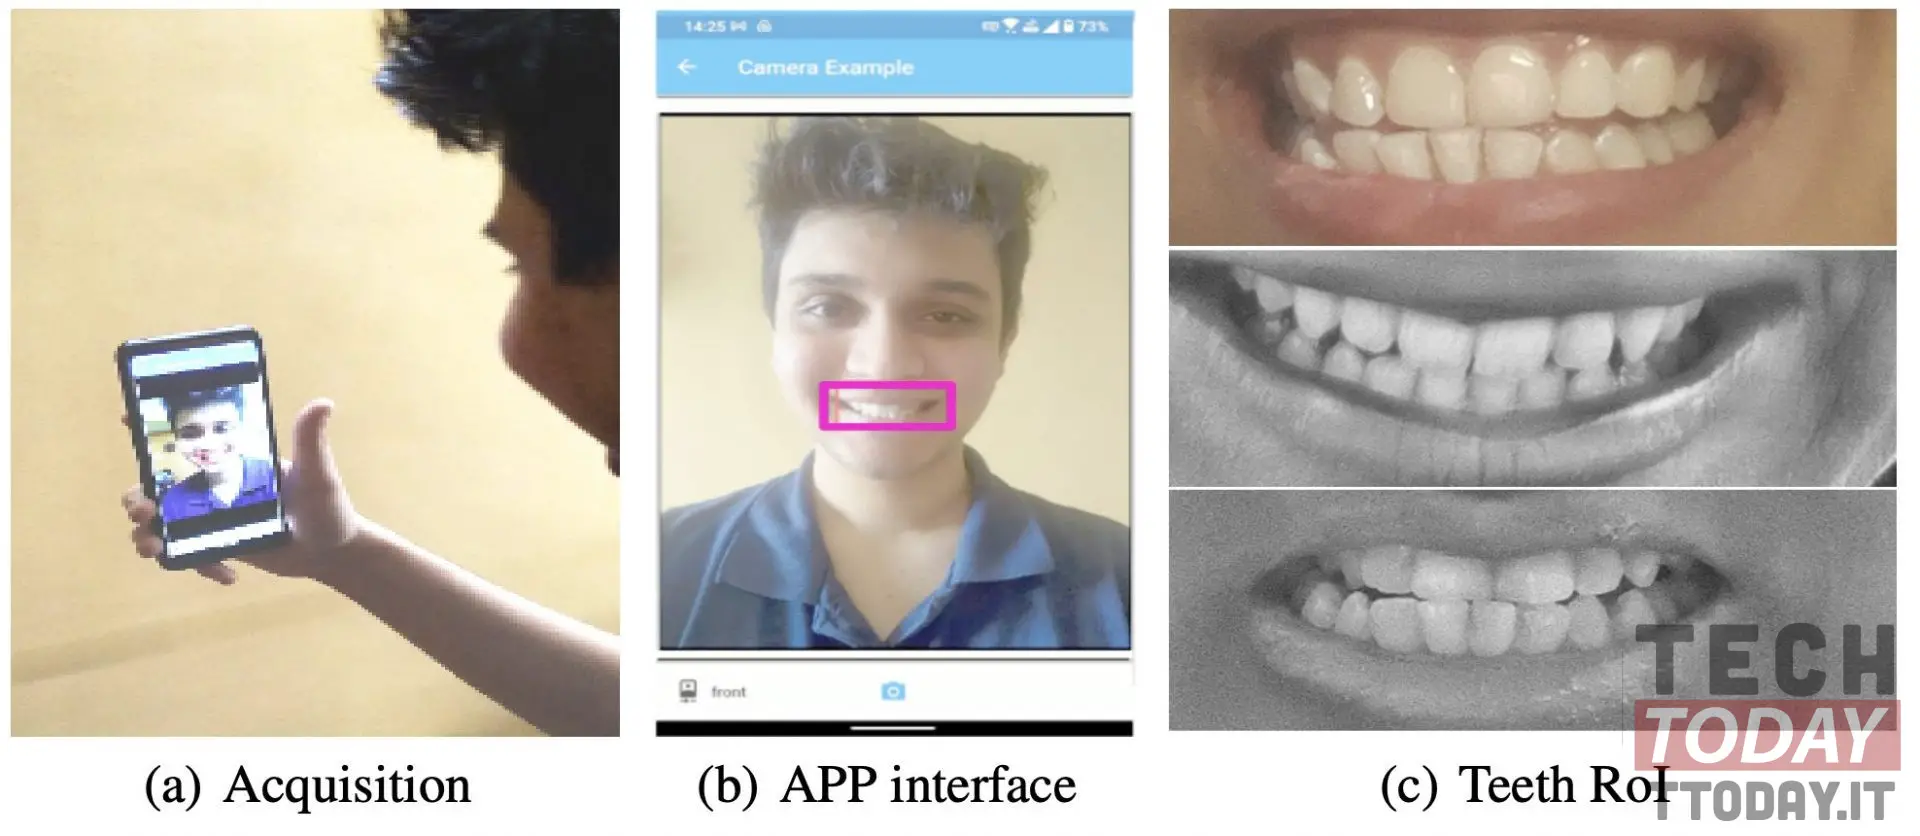 tecnologia di autenticazione tipo face unlock ma con i denti